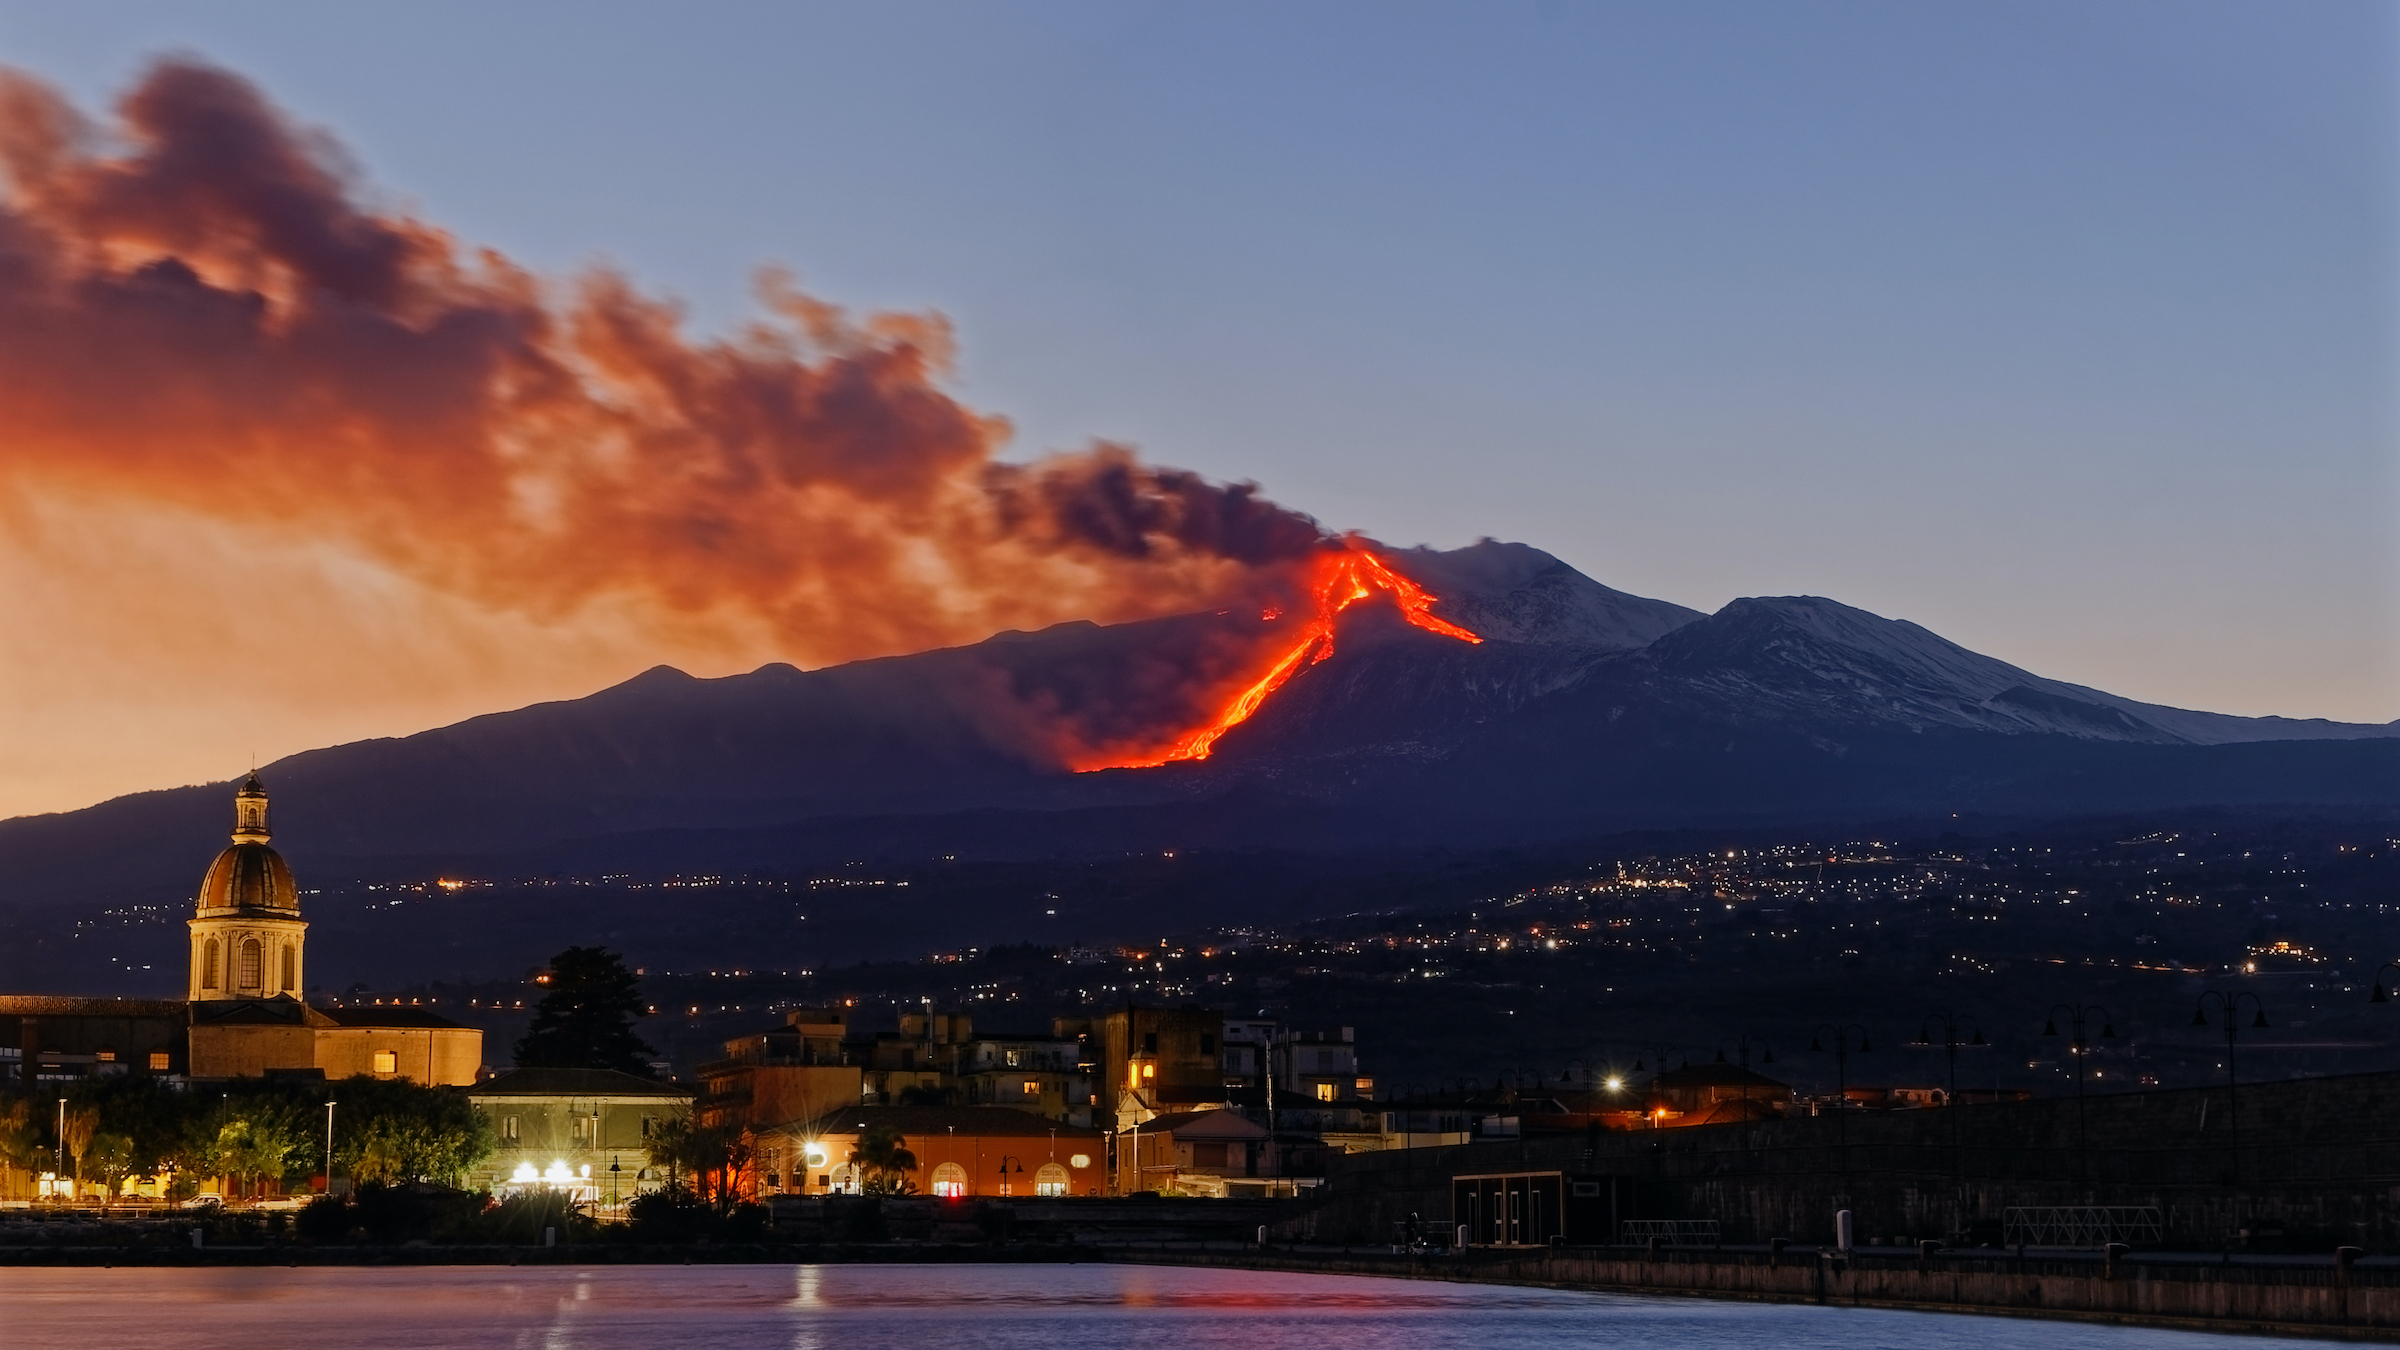 Núi lửa Etna phun trào đài dung nham 1.500 mét